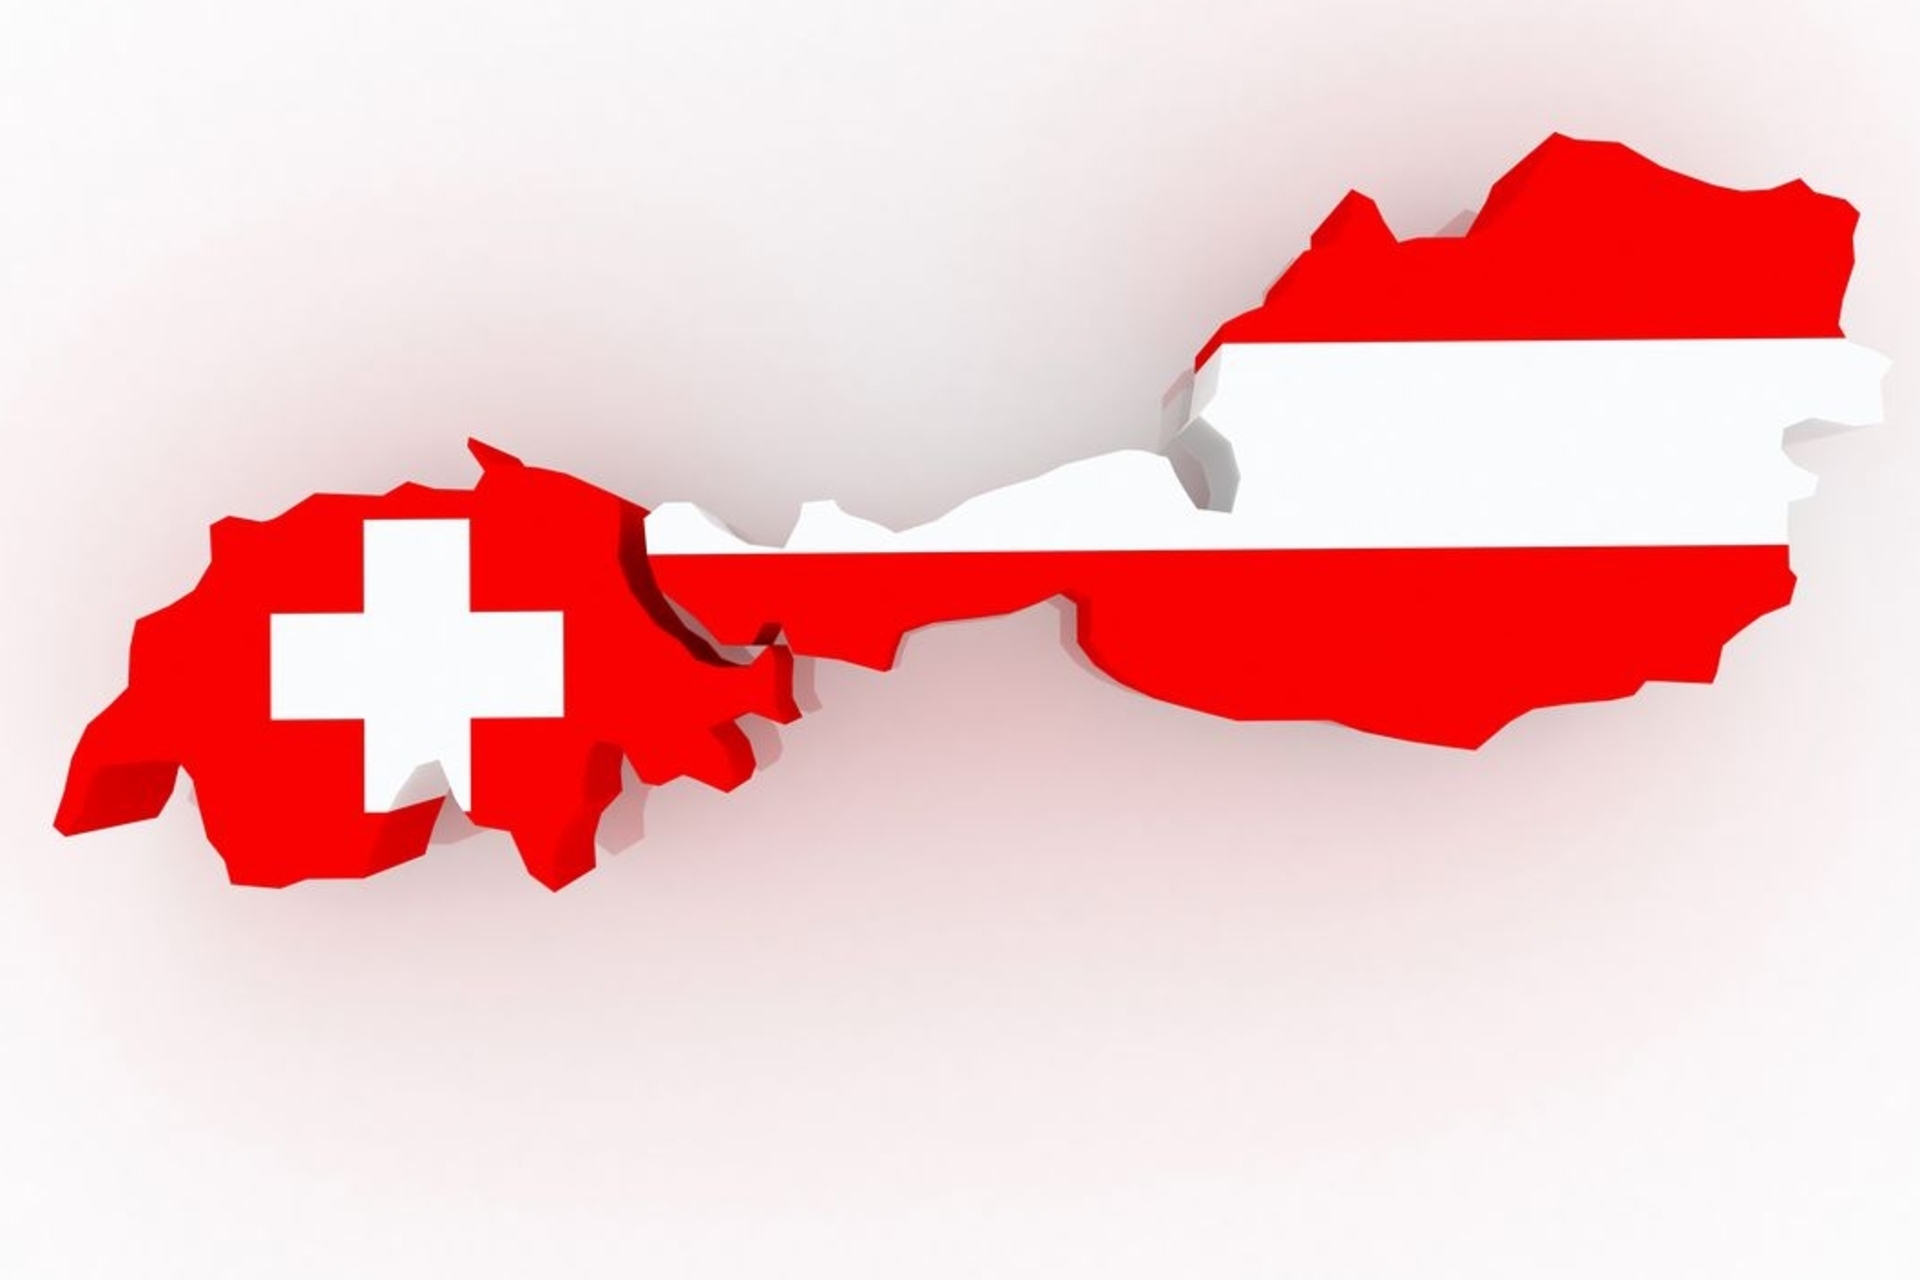 Schweiz og Østrigs grænser og flag